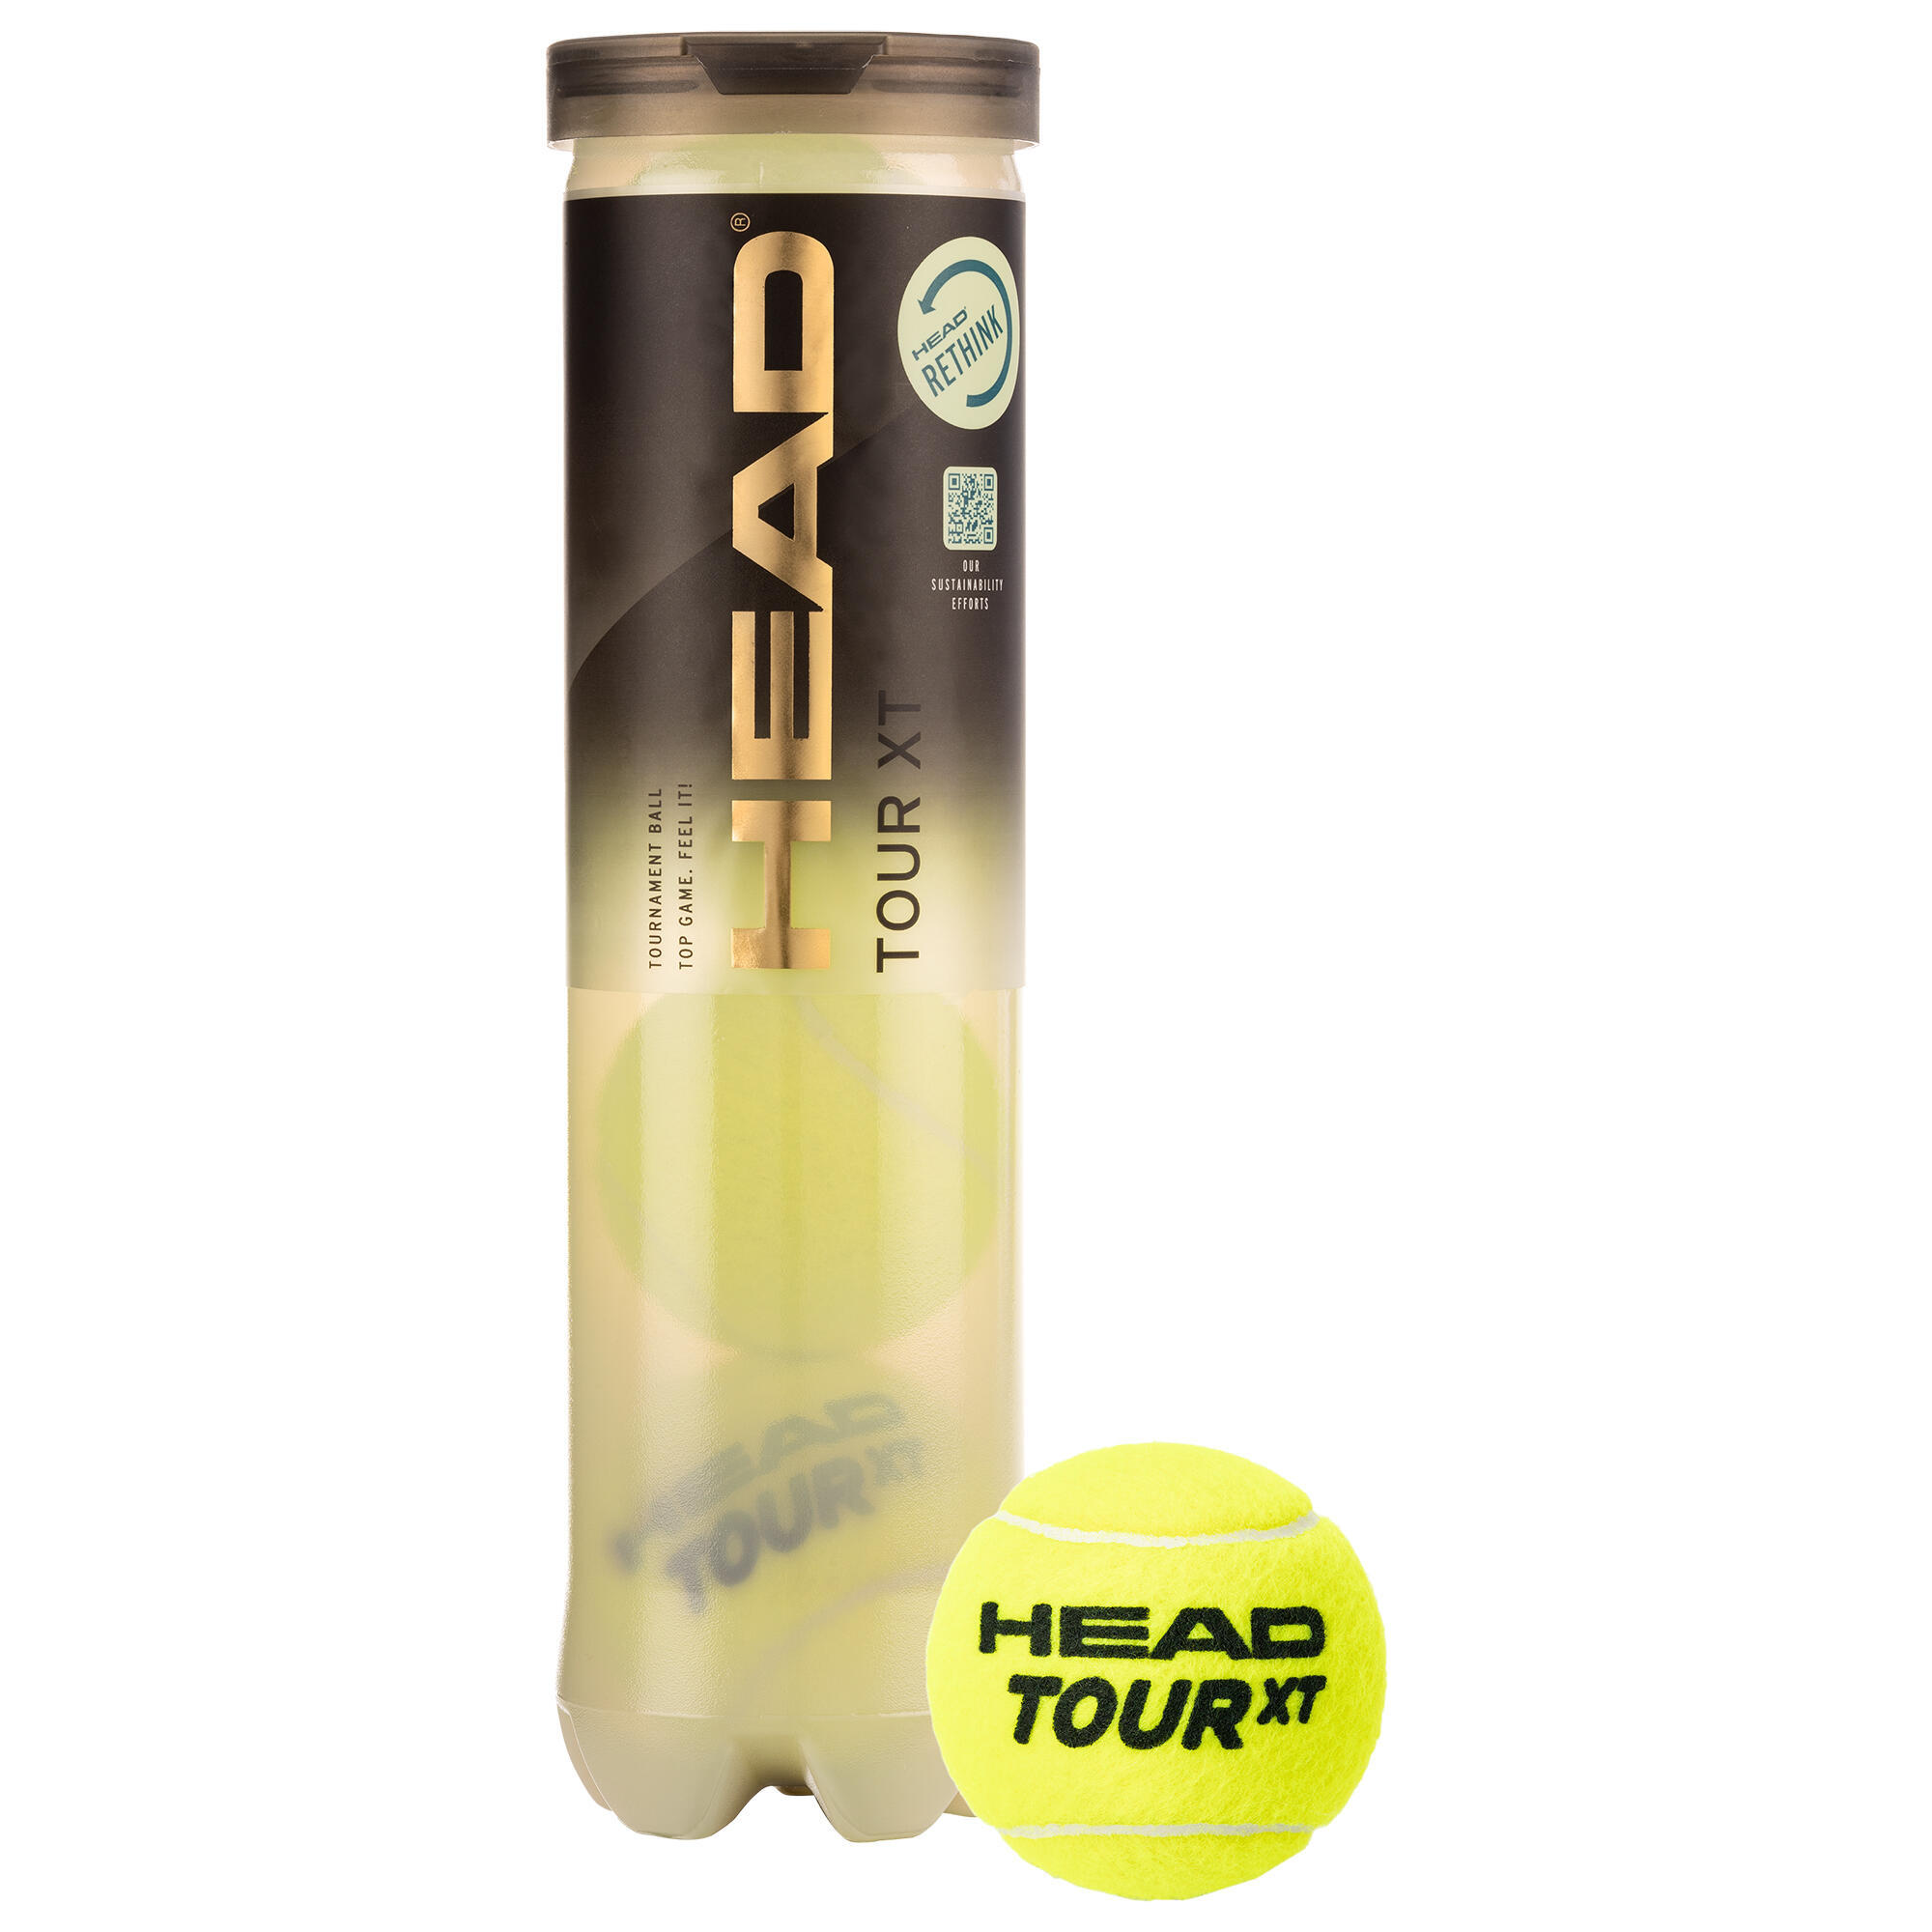 Теннисные мячи Head Tour XT Control, 4 шт. теннисные мячи head tour xt control 4 шт